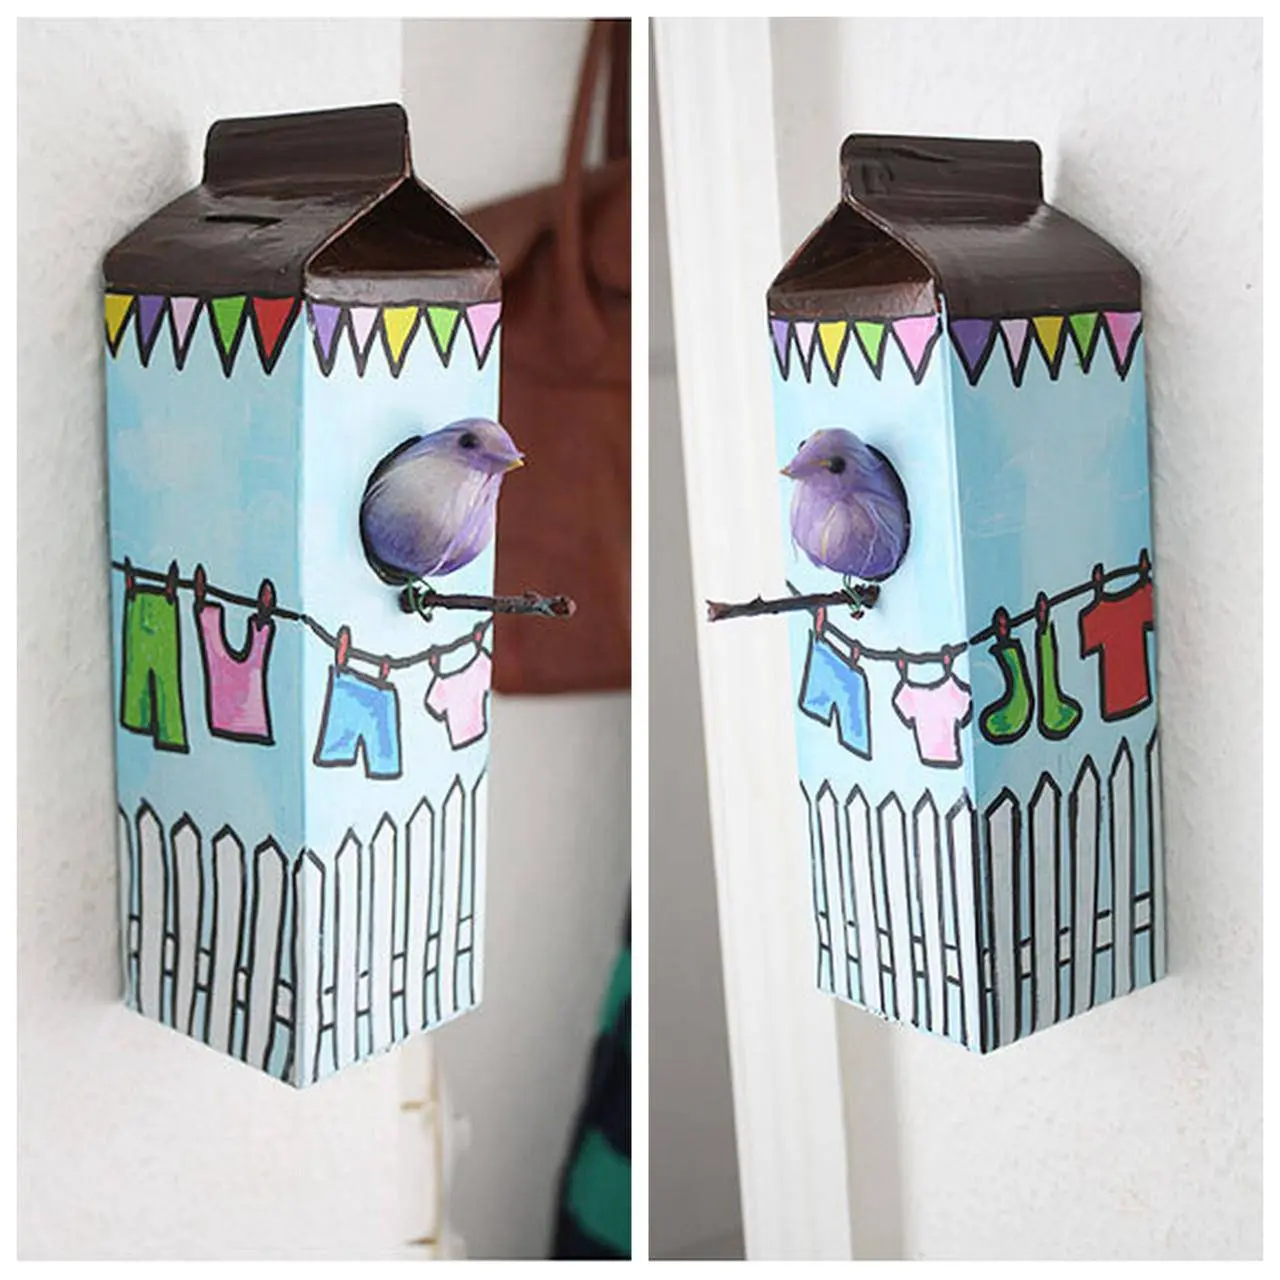 Cofrinho que imita casinha de passarinho feito com artesanato de caixa de leite reciclada